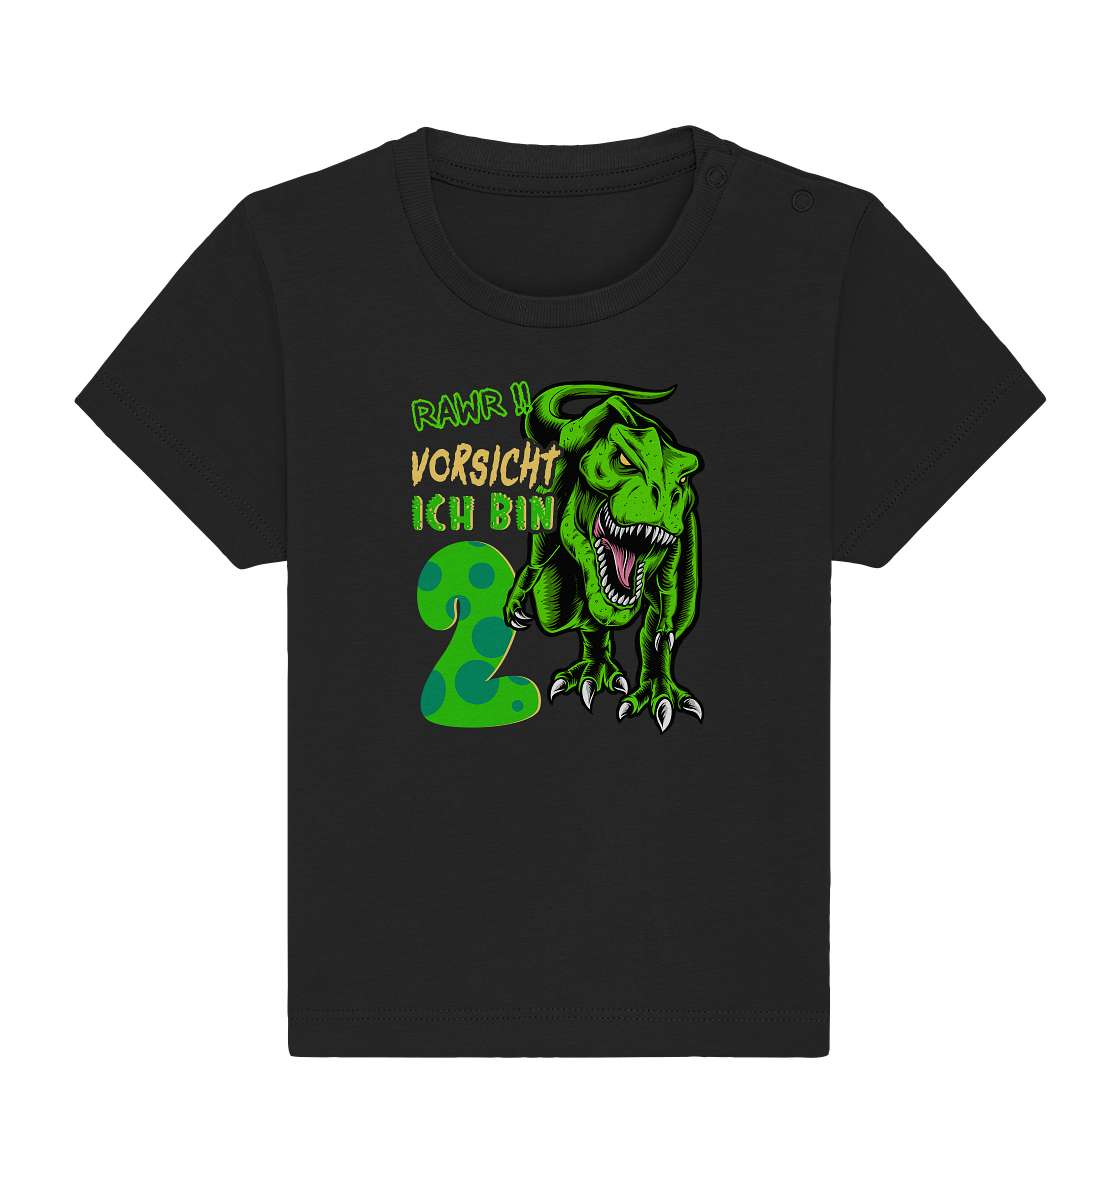 2. Kinder Geburtstag - T-REX Dinosaurier - Ich bin 2 Jahre - Geschenk - Baby Organic Shirt